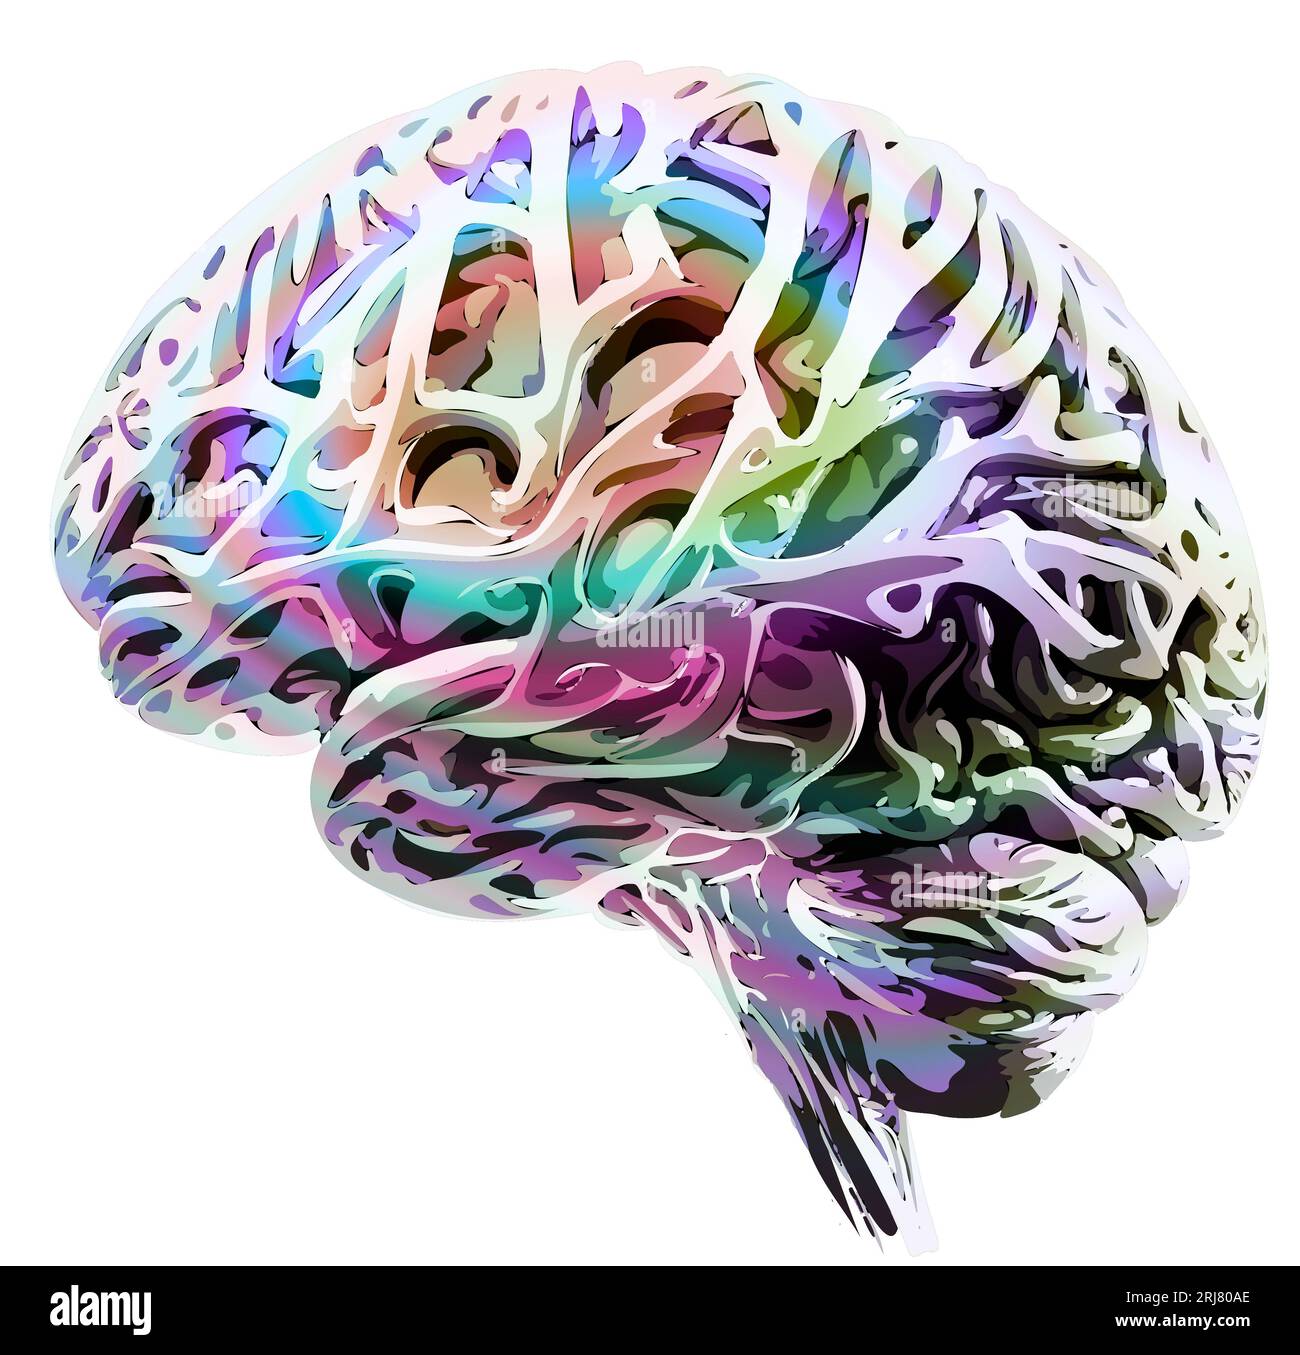 Neurologie, philosophie : connexions, développement de la pensée et de la réflexion, possibilités infinies du cerveau et de l'esprit. Anatomie humaine Banque D'Images